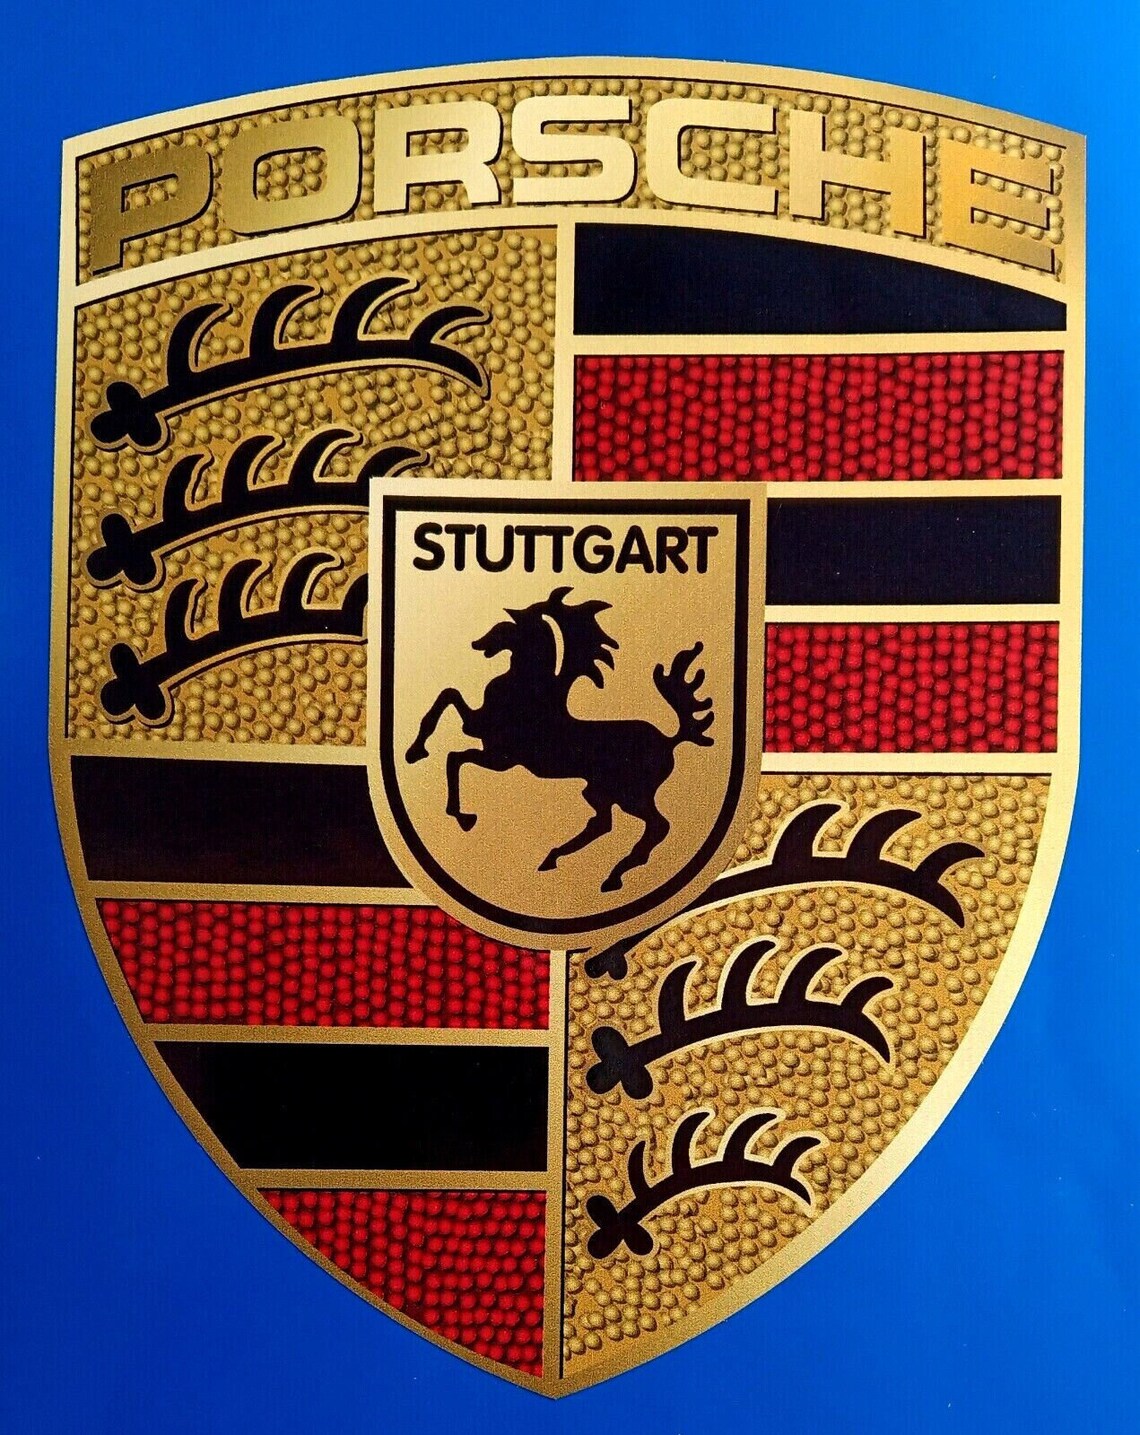 Porsche Stuttgart Emblem Car Decal Vinyl Sticker – Redsigns